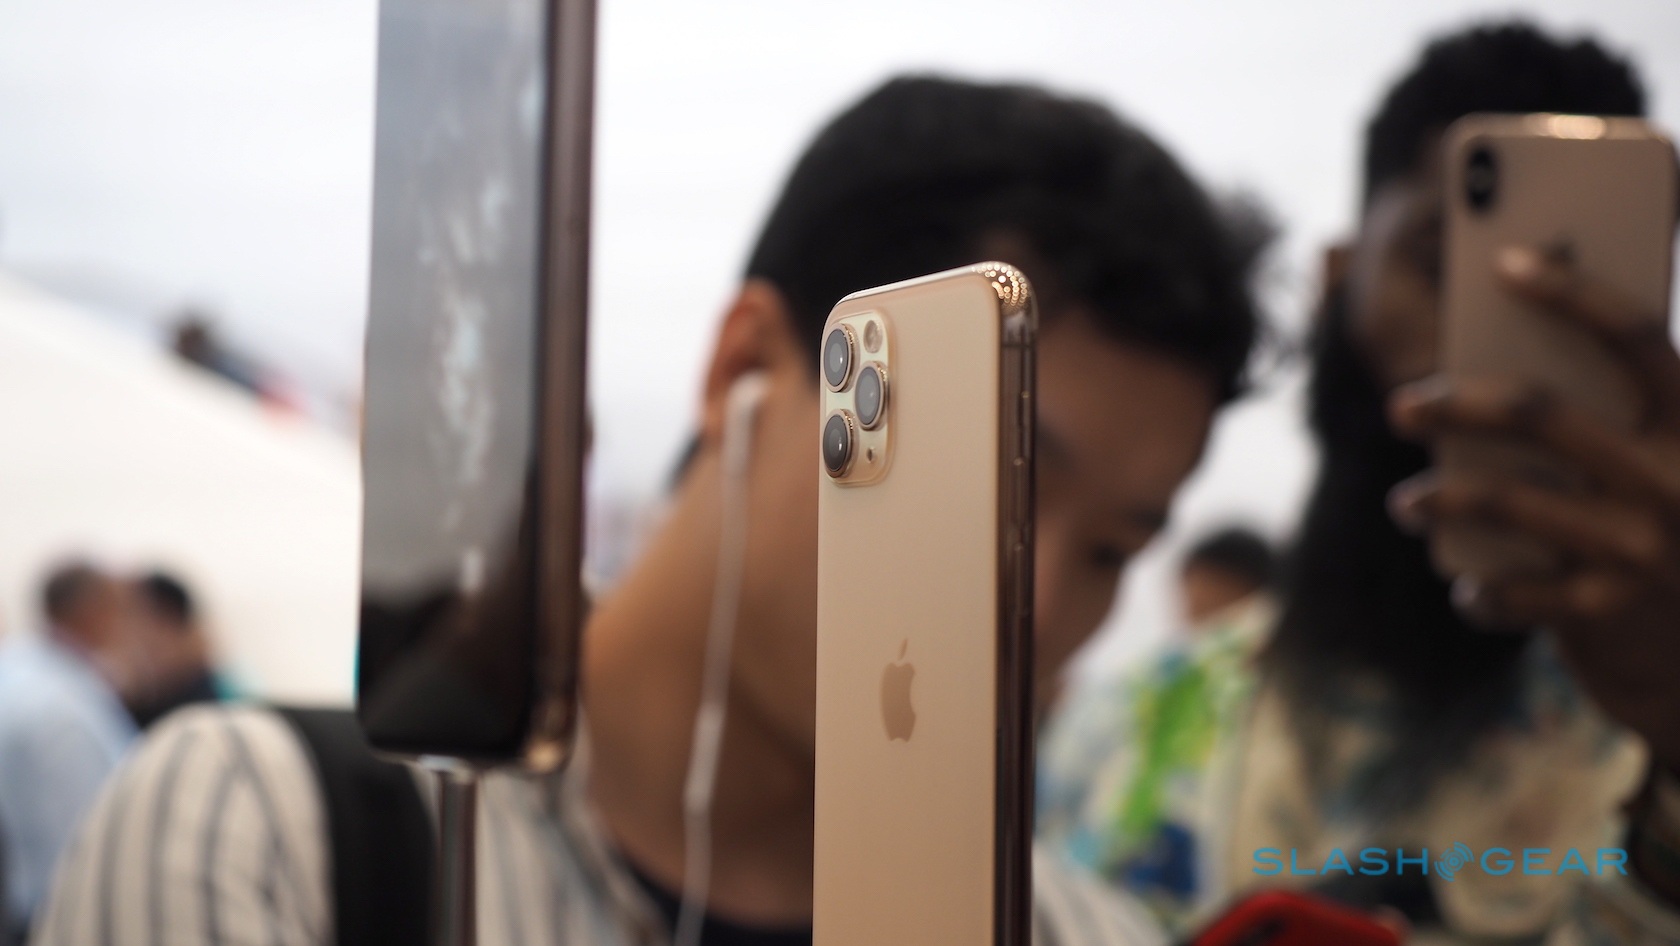 iPhone 11 rớt giá tại Việt Nam, dân buôn xé phụ kiện bán kiếm lời